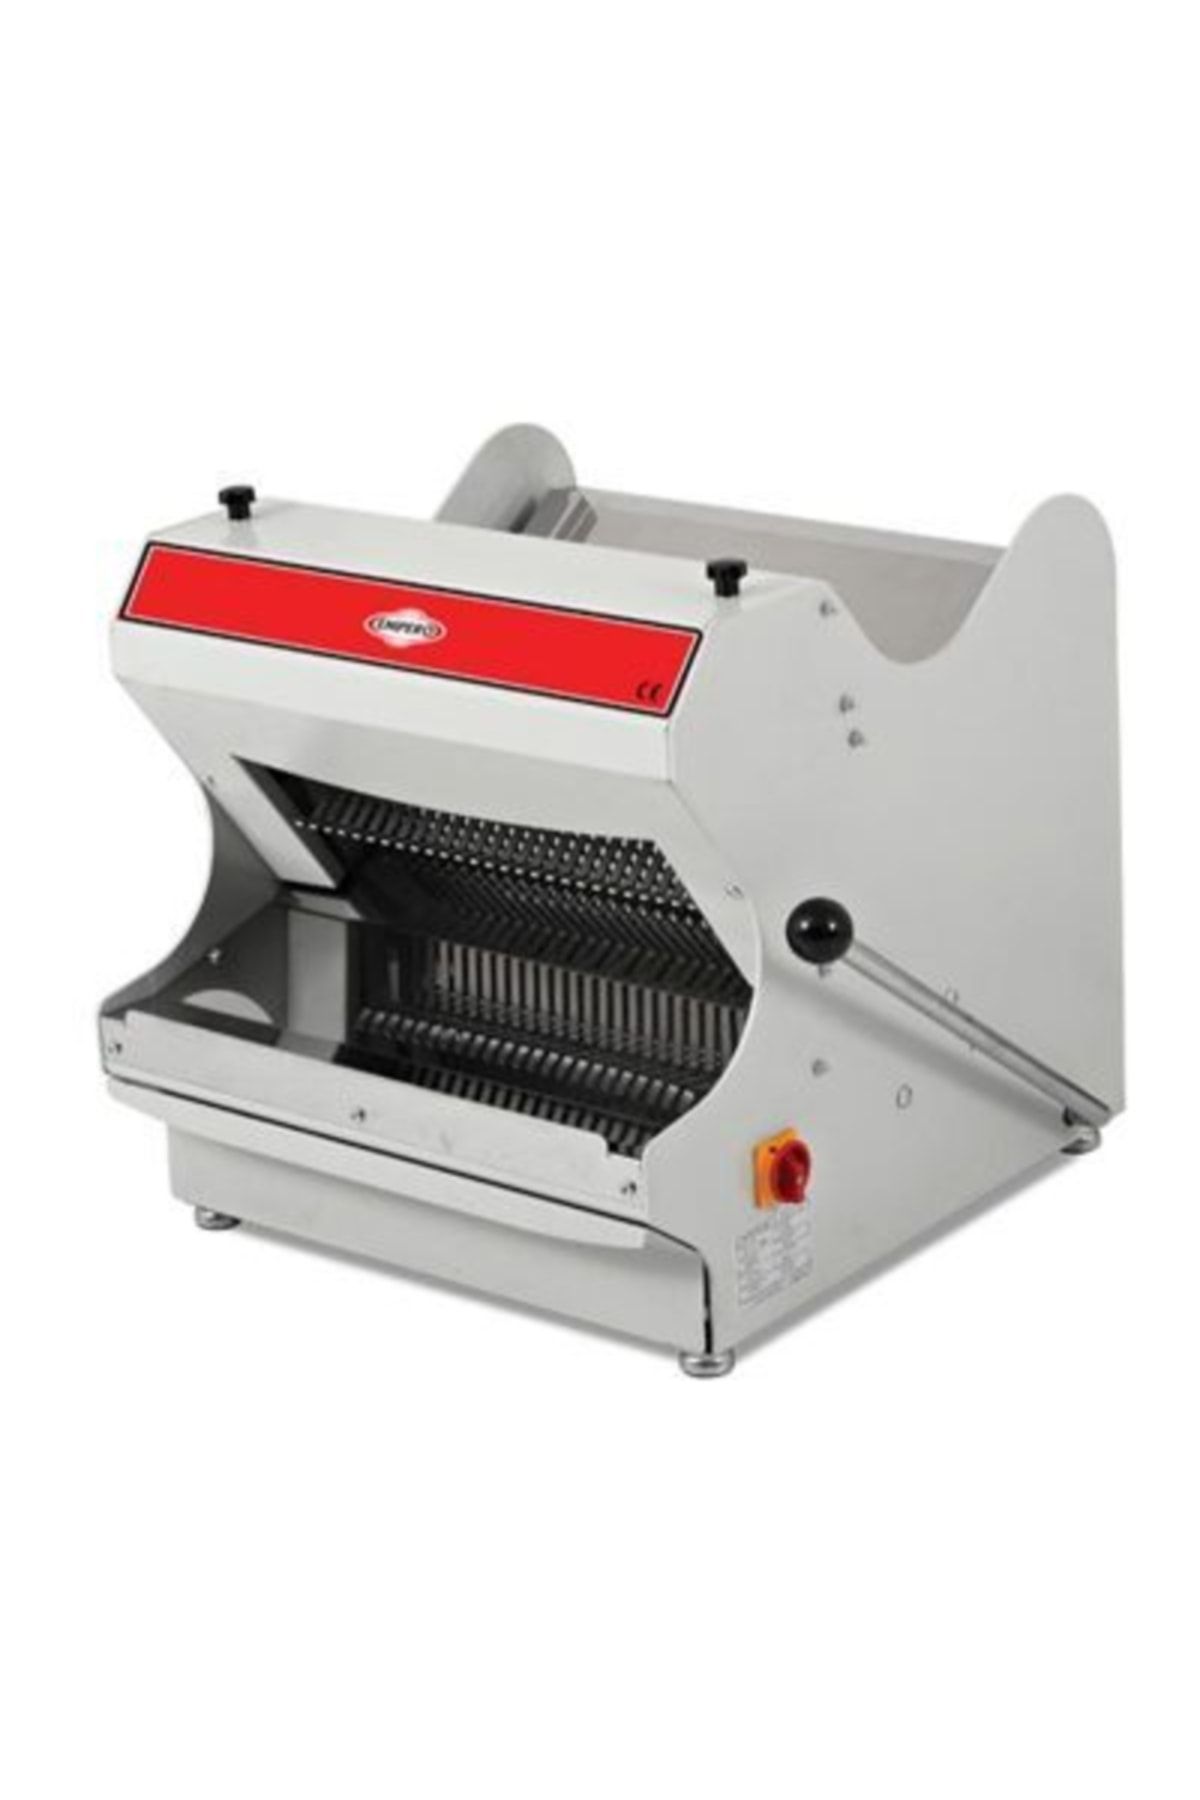 Empero Set Üstü Ekmek Dilimleme Makinesi, 10 Mm